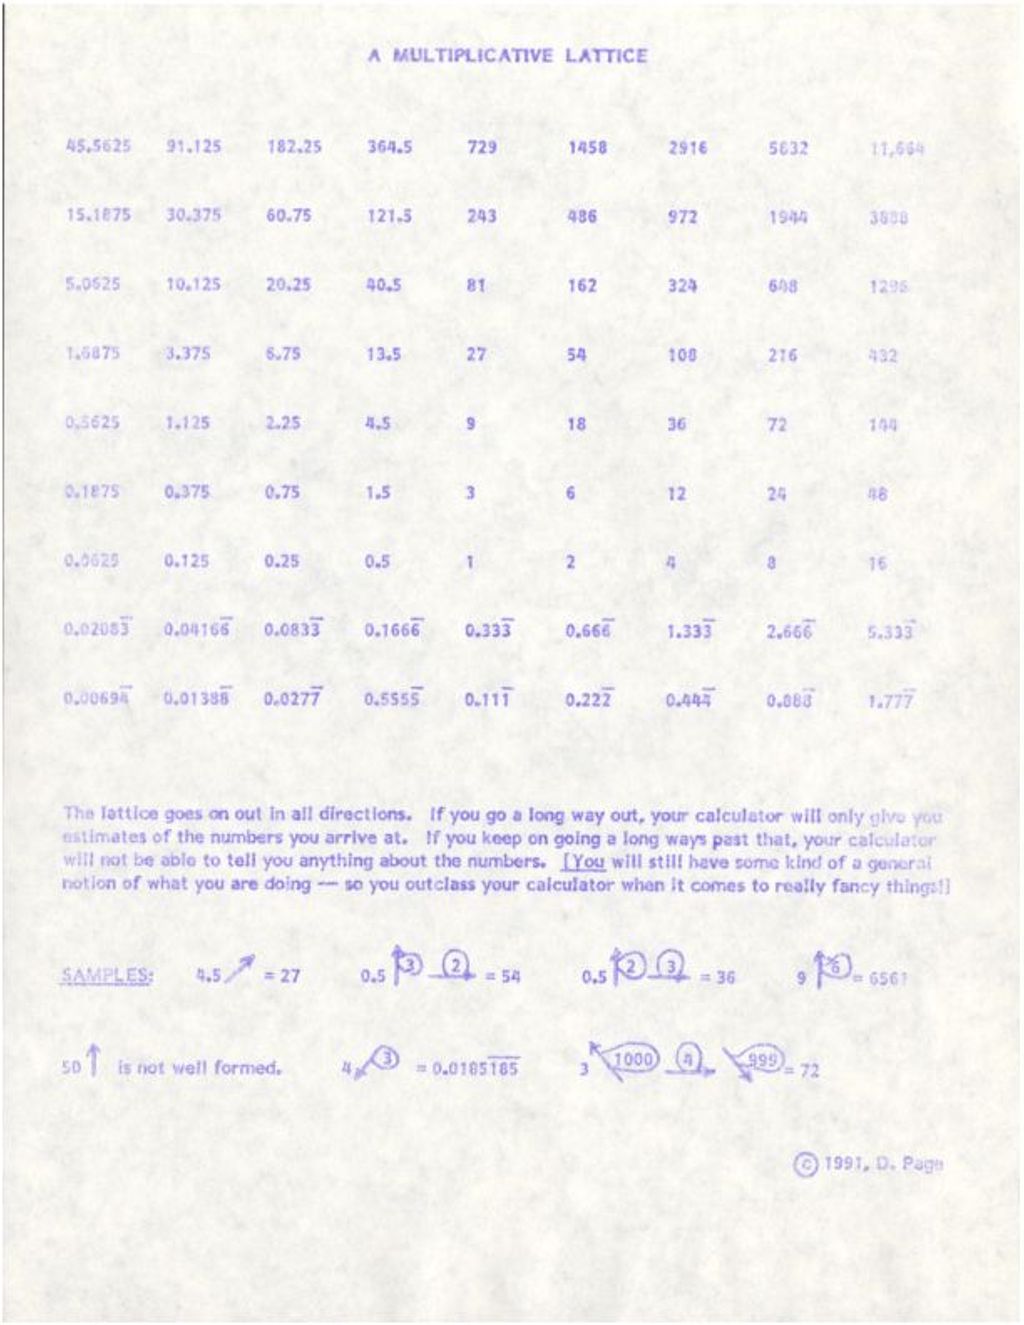 A Multiplicative Lattice [lattice w/examples] [decimals] (1991)